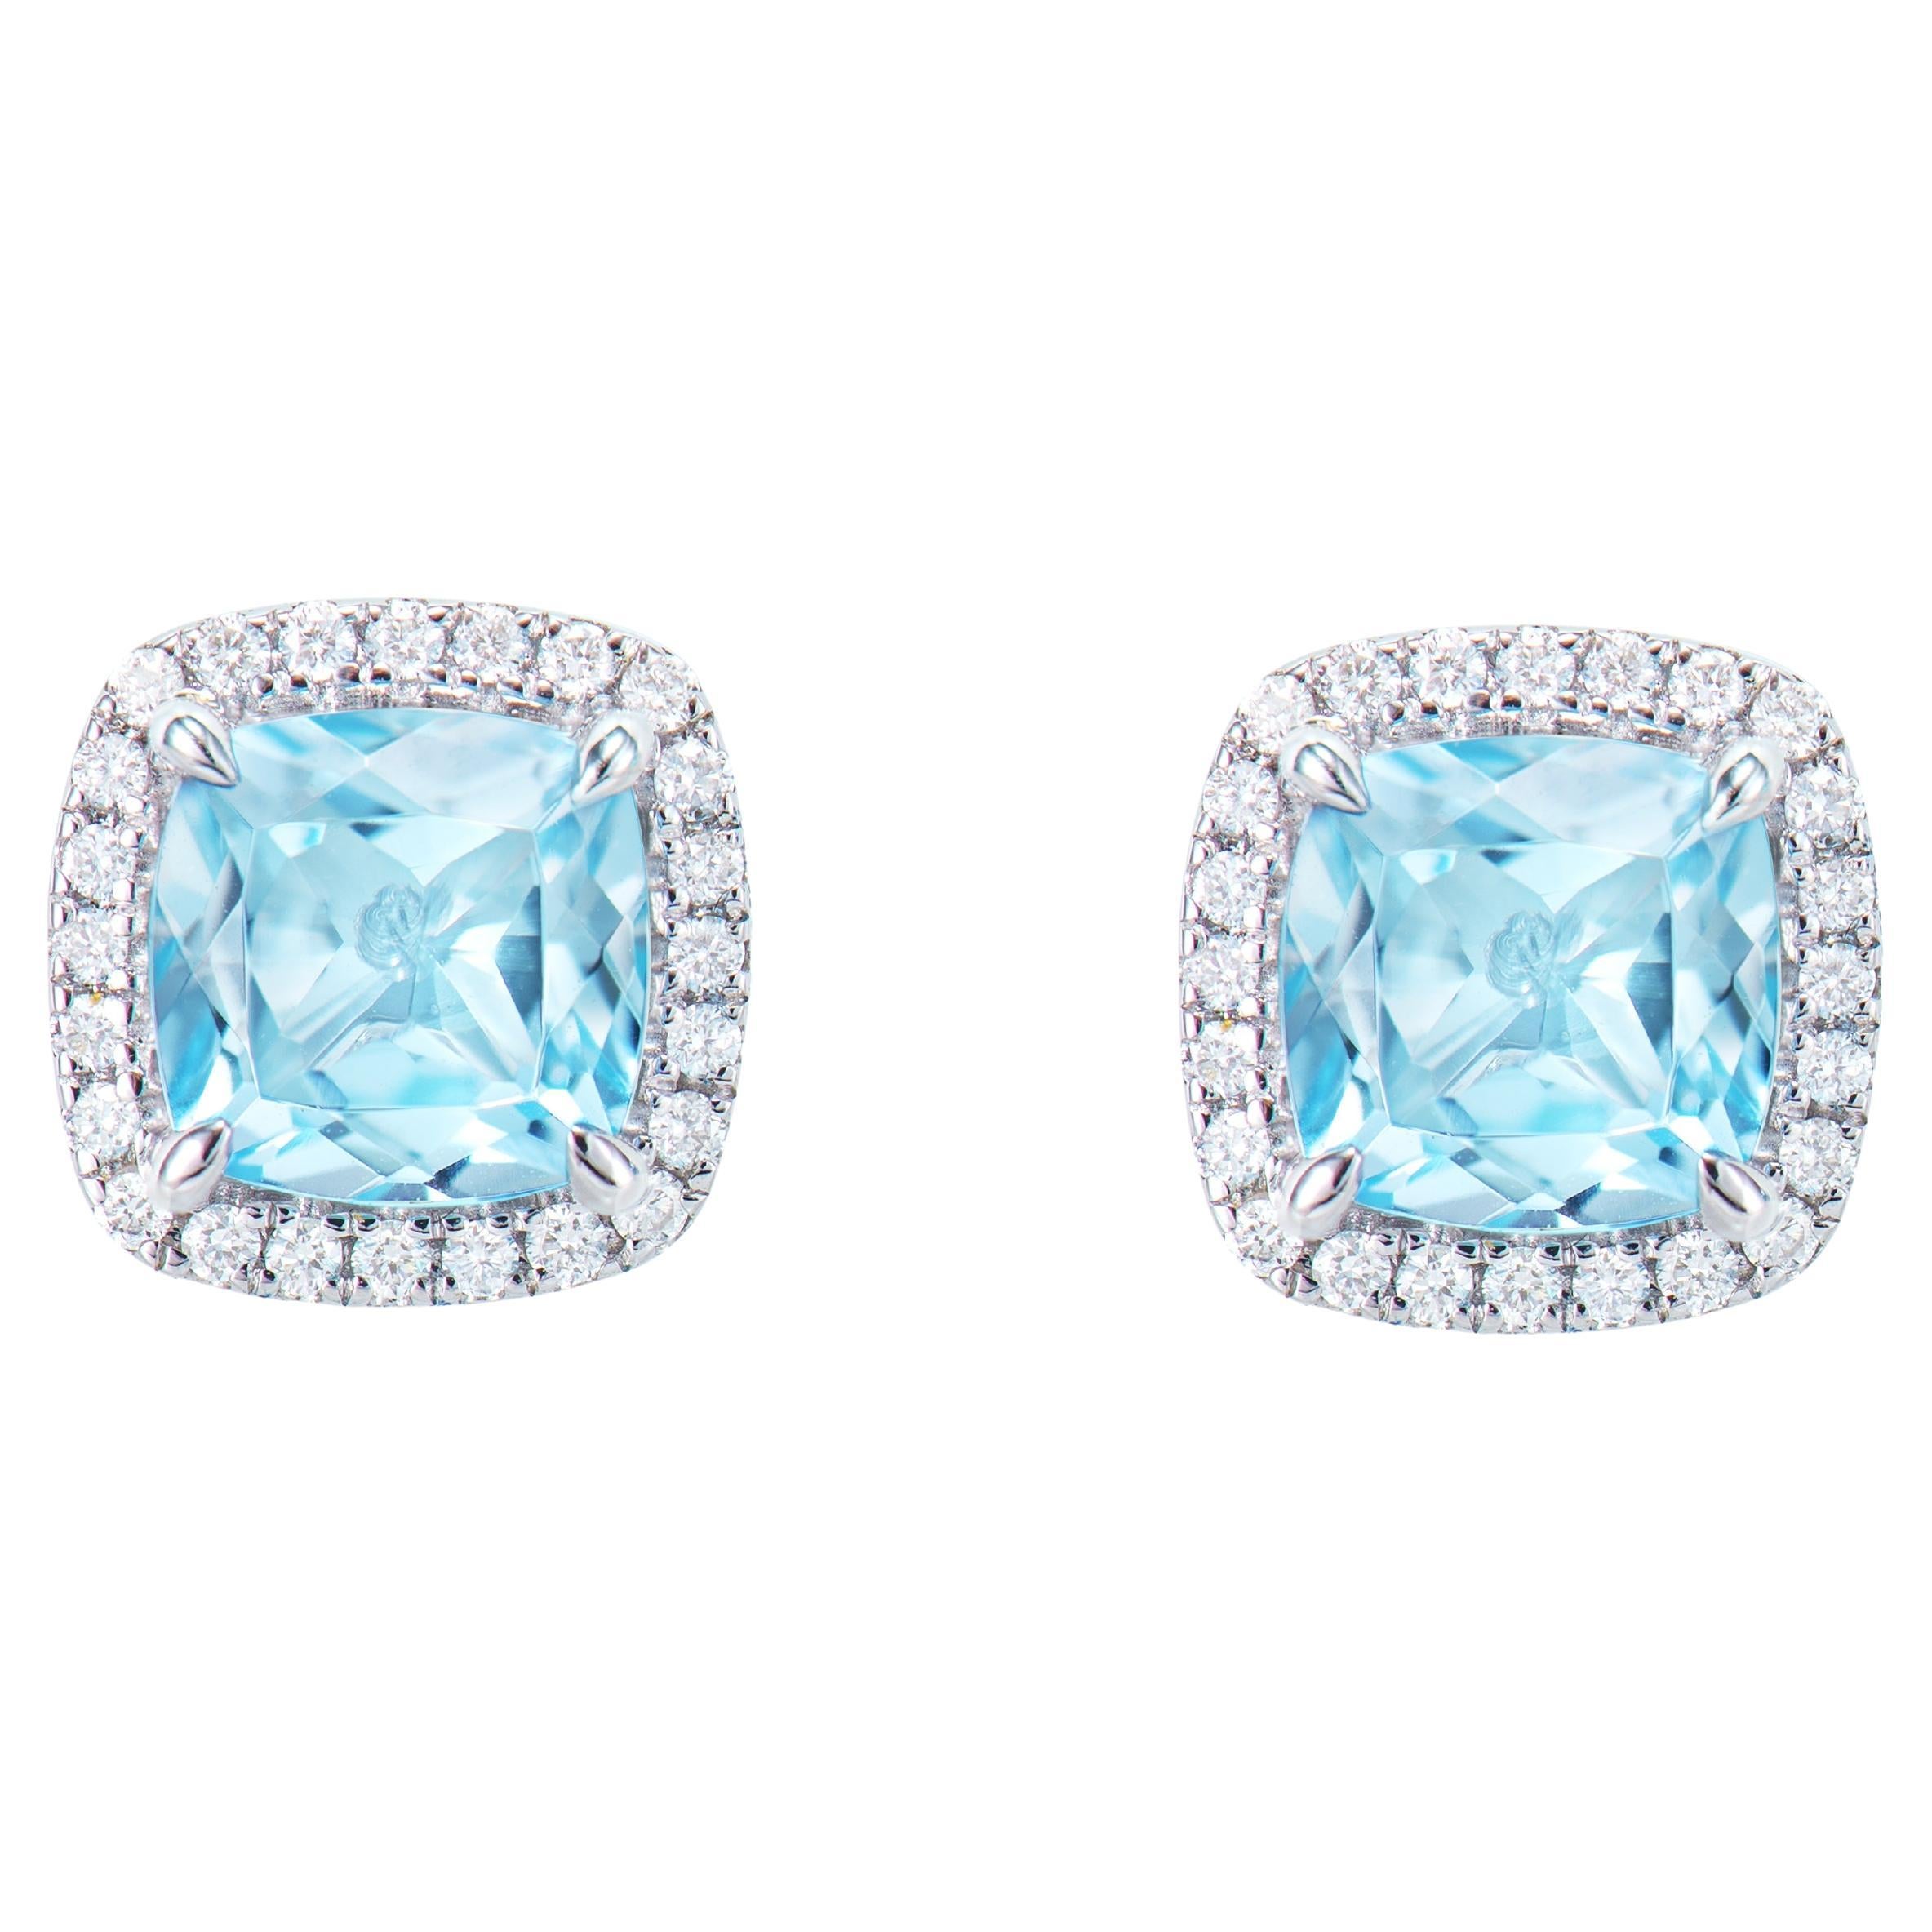 2.19 Carat Sky Blue Topaz Stud Earrings in 18KWG with White Diamond.